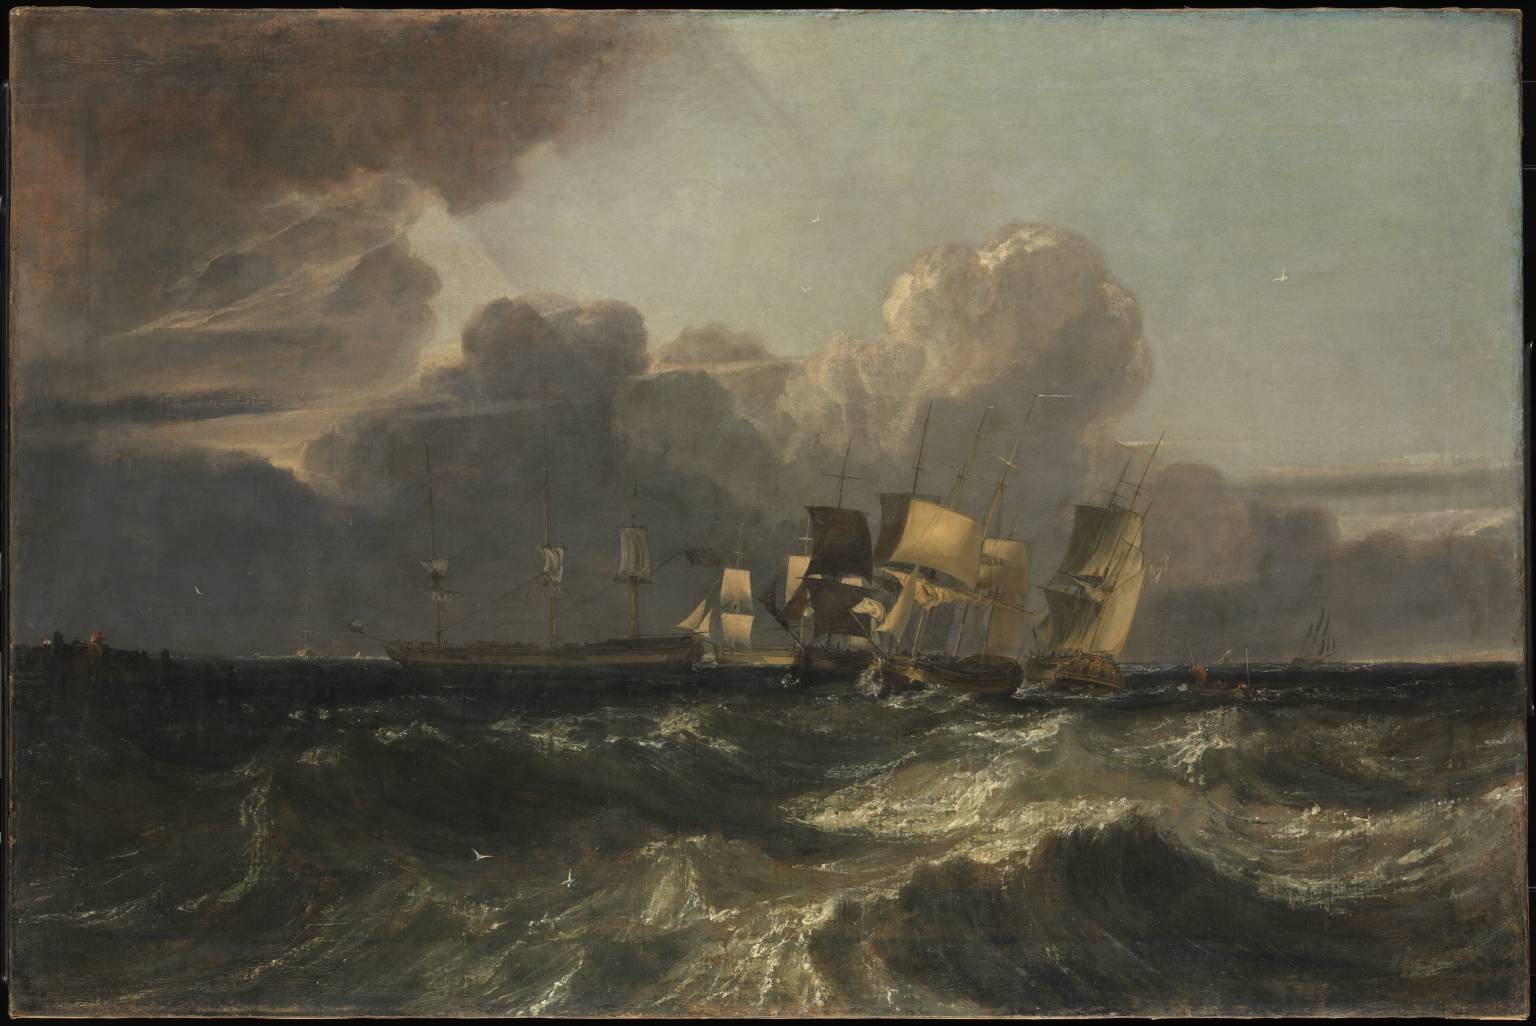 Les navires se préparent à l'ancrage - William Turner